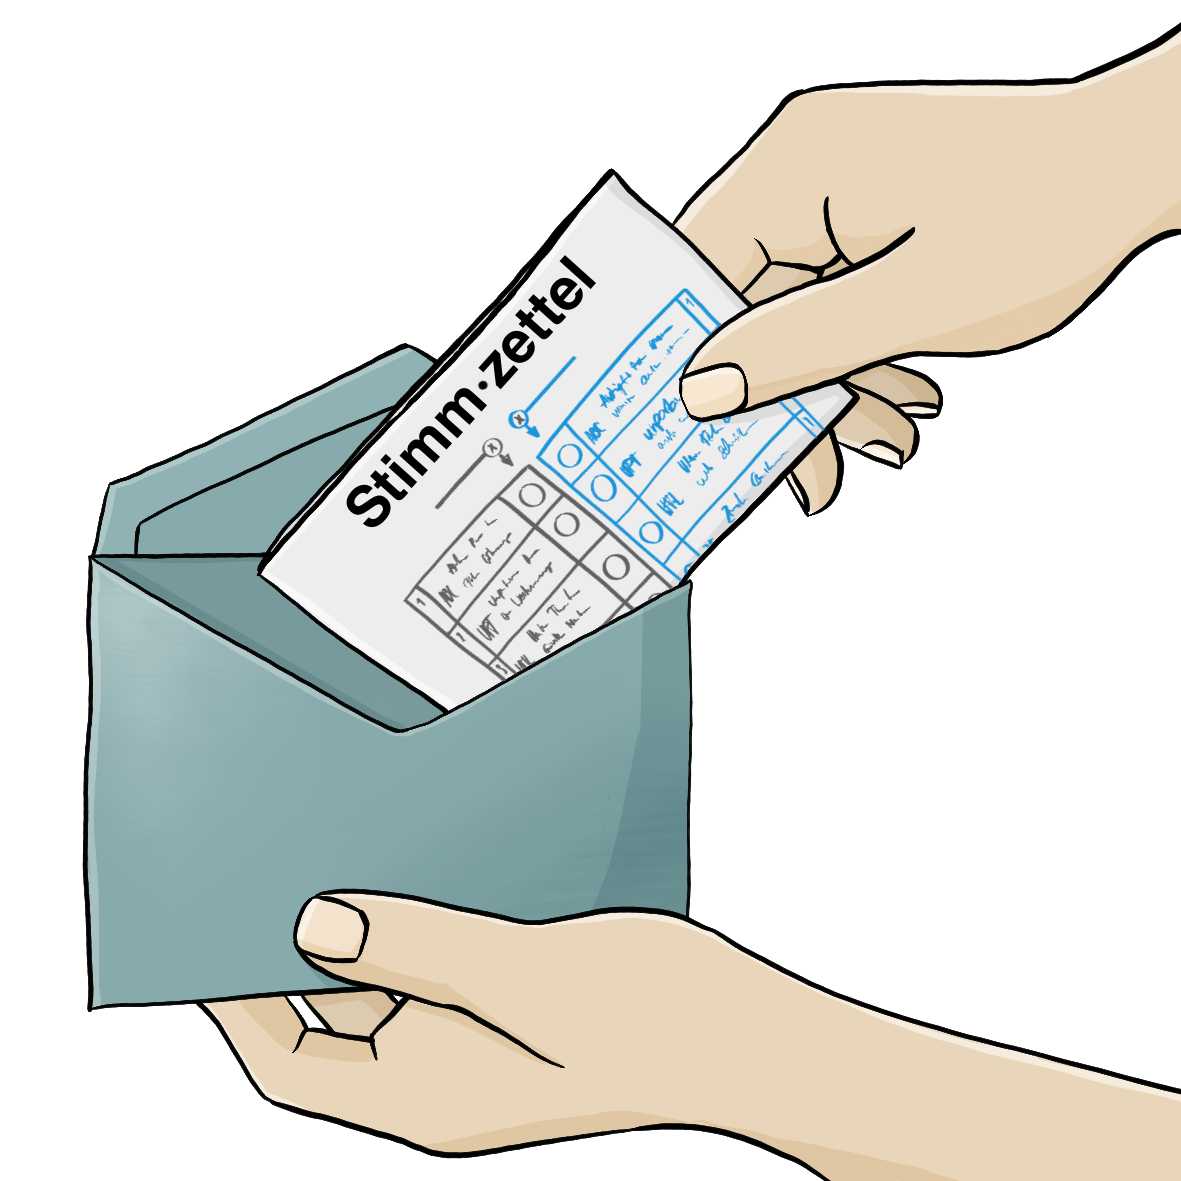 Eine Hand steckt einen Stimmzettel in einen blauen Briefumschlag.